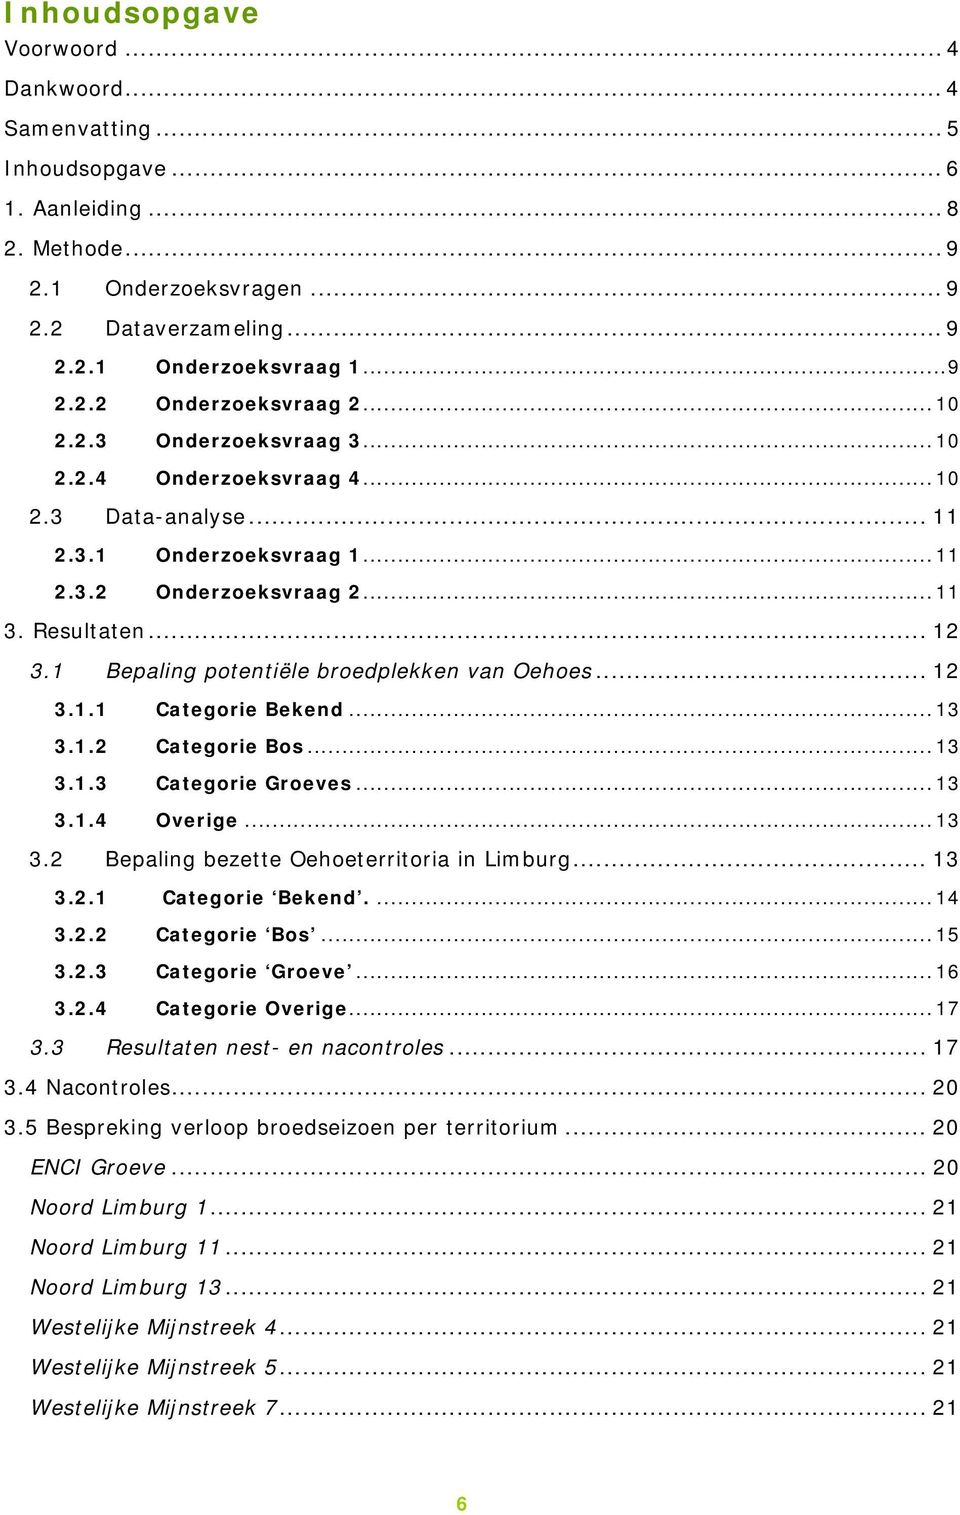 1 Bepaling potentiële broedplekken van Oehoes... 12 3.1.1 Categorie Bekend...13 3.1.2 Categorie Bos...13 3.1.3 Categorie Groeves...13 3.1.4 Overige...13 3.2 Bepaling bezette Oehoeterritoria in Limburg.